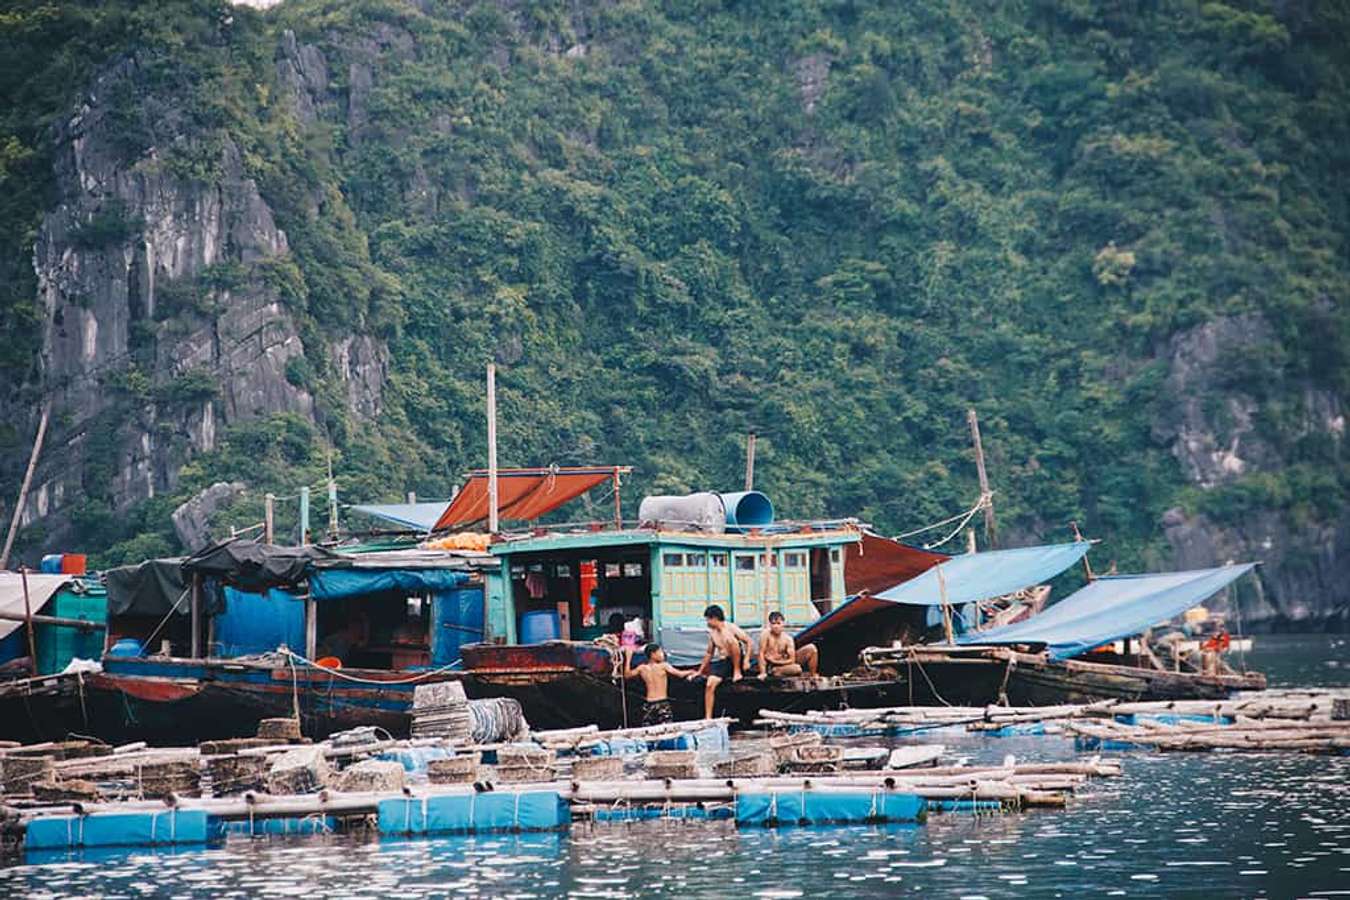 Làng chài Việt lọt top những ngôi làng cổ tích đẹp như tranh trên thế giới: Có cả núi và biển, cách Hà Nội chỉ 2 giờ chạy xe - Ảnh 4.